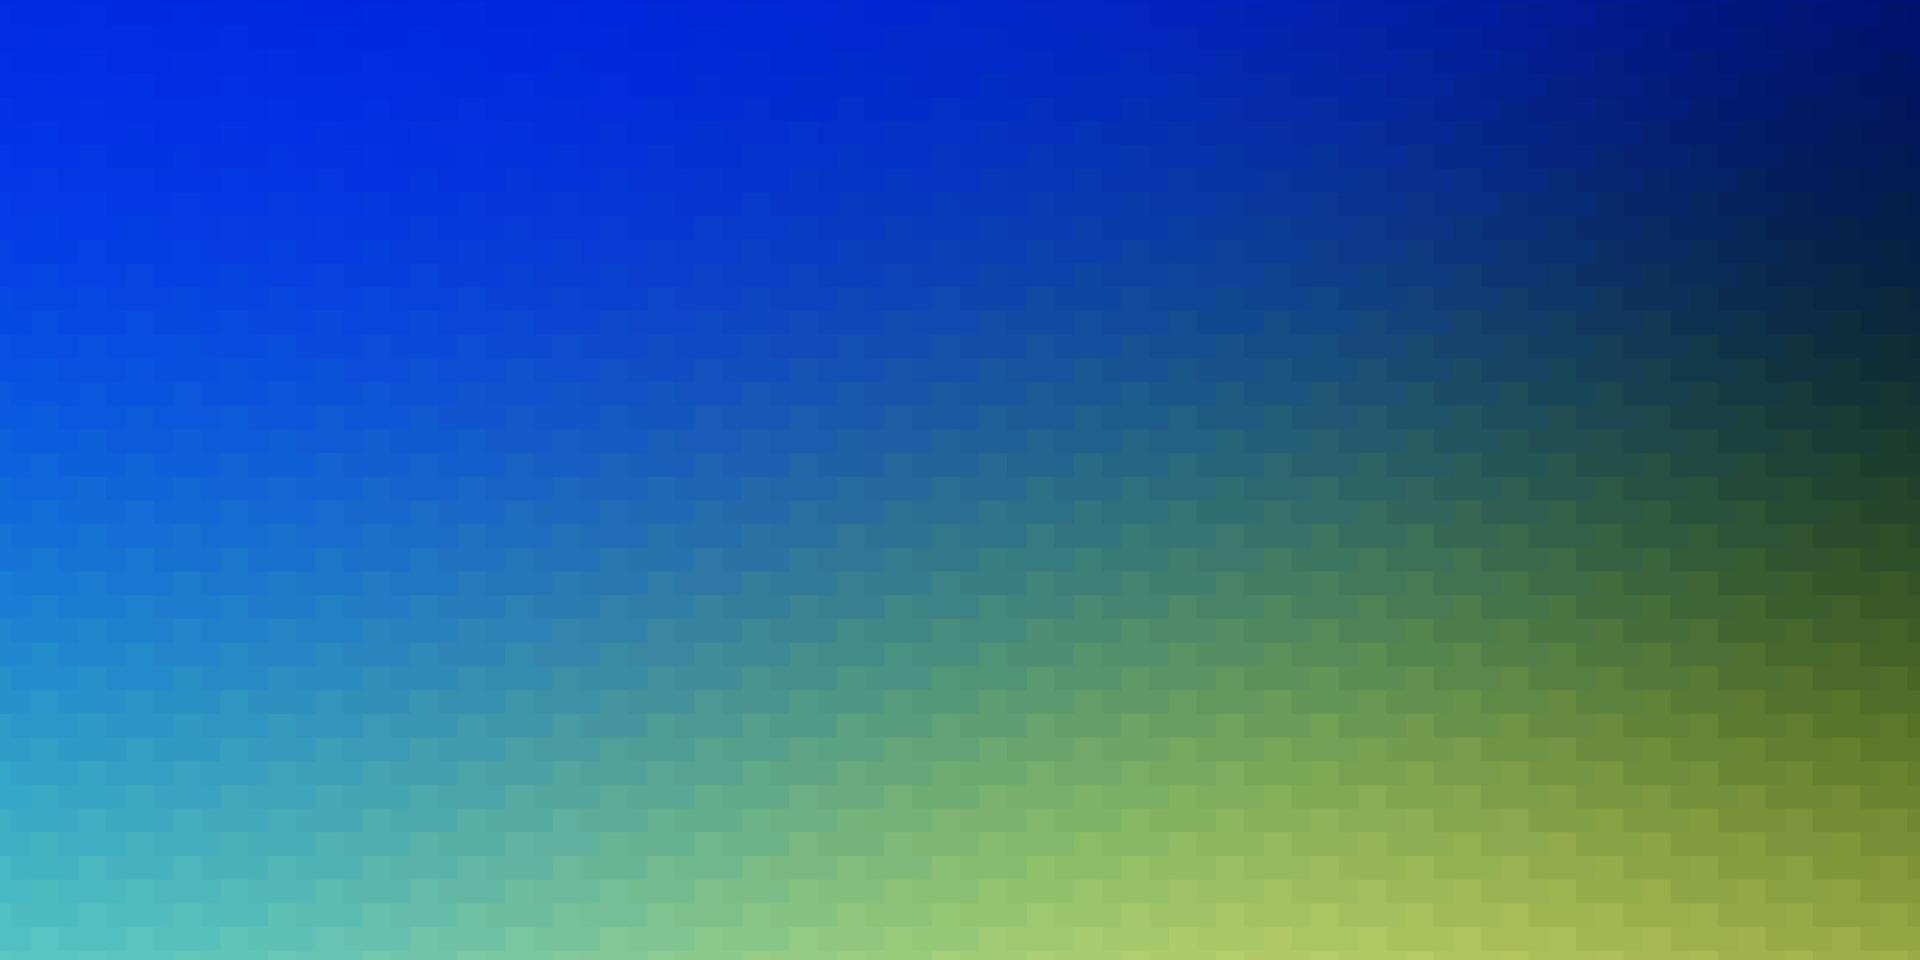 Fondo de vector azul claro, verde con rectángulos.